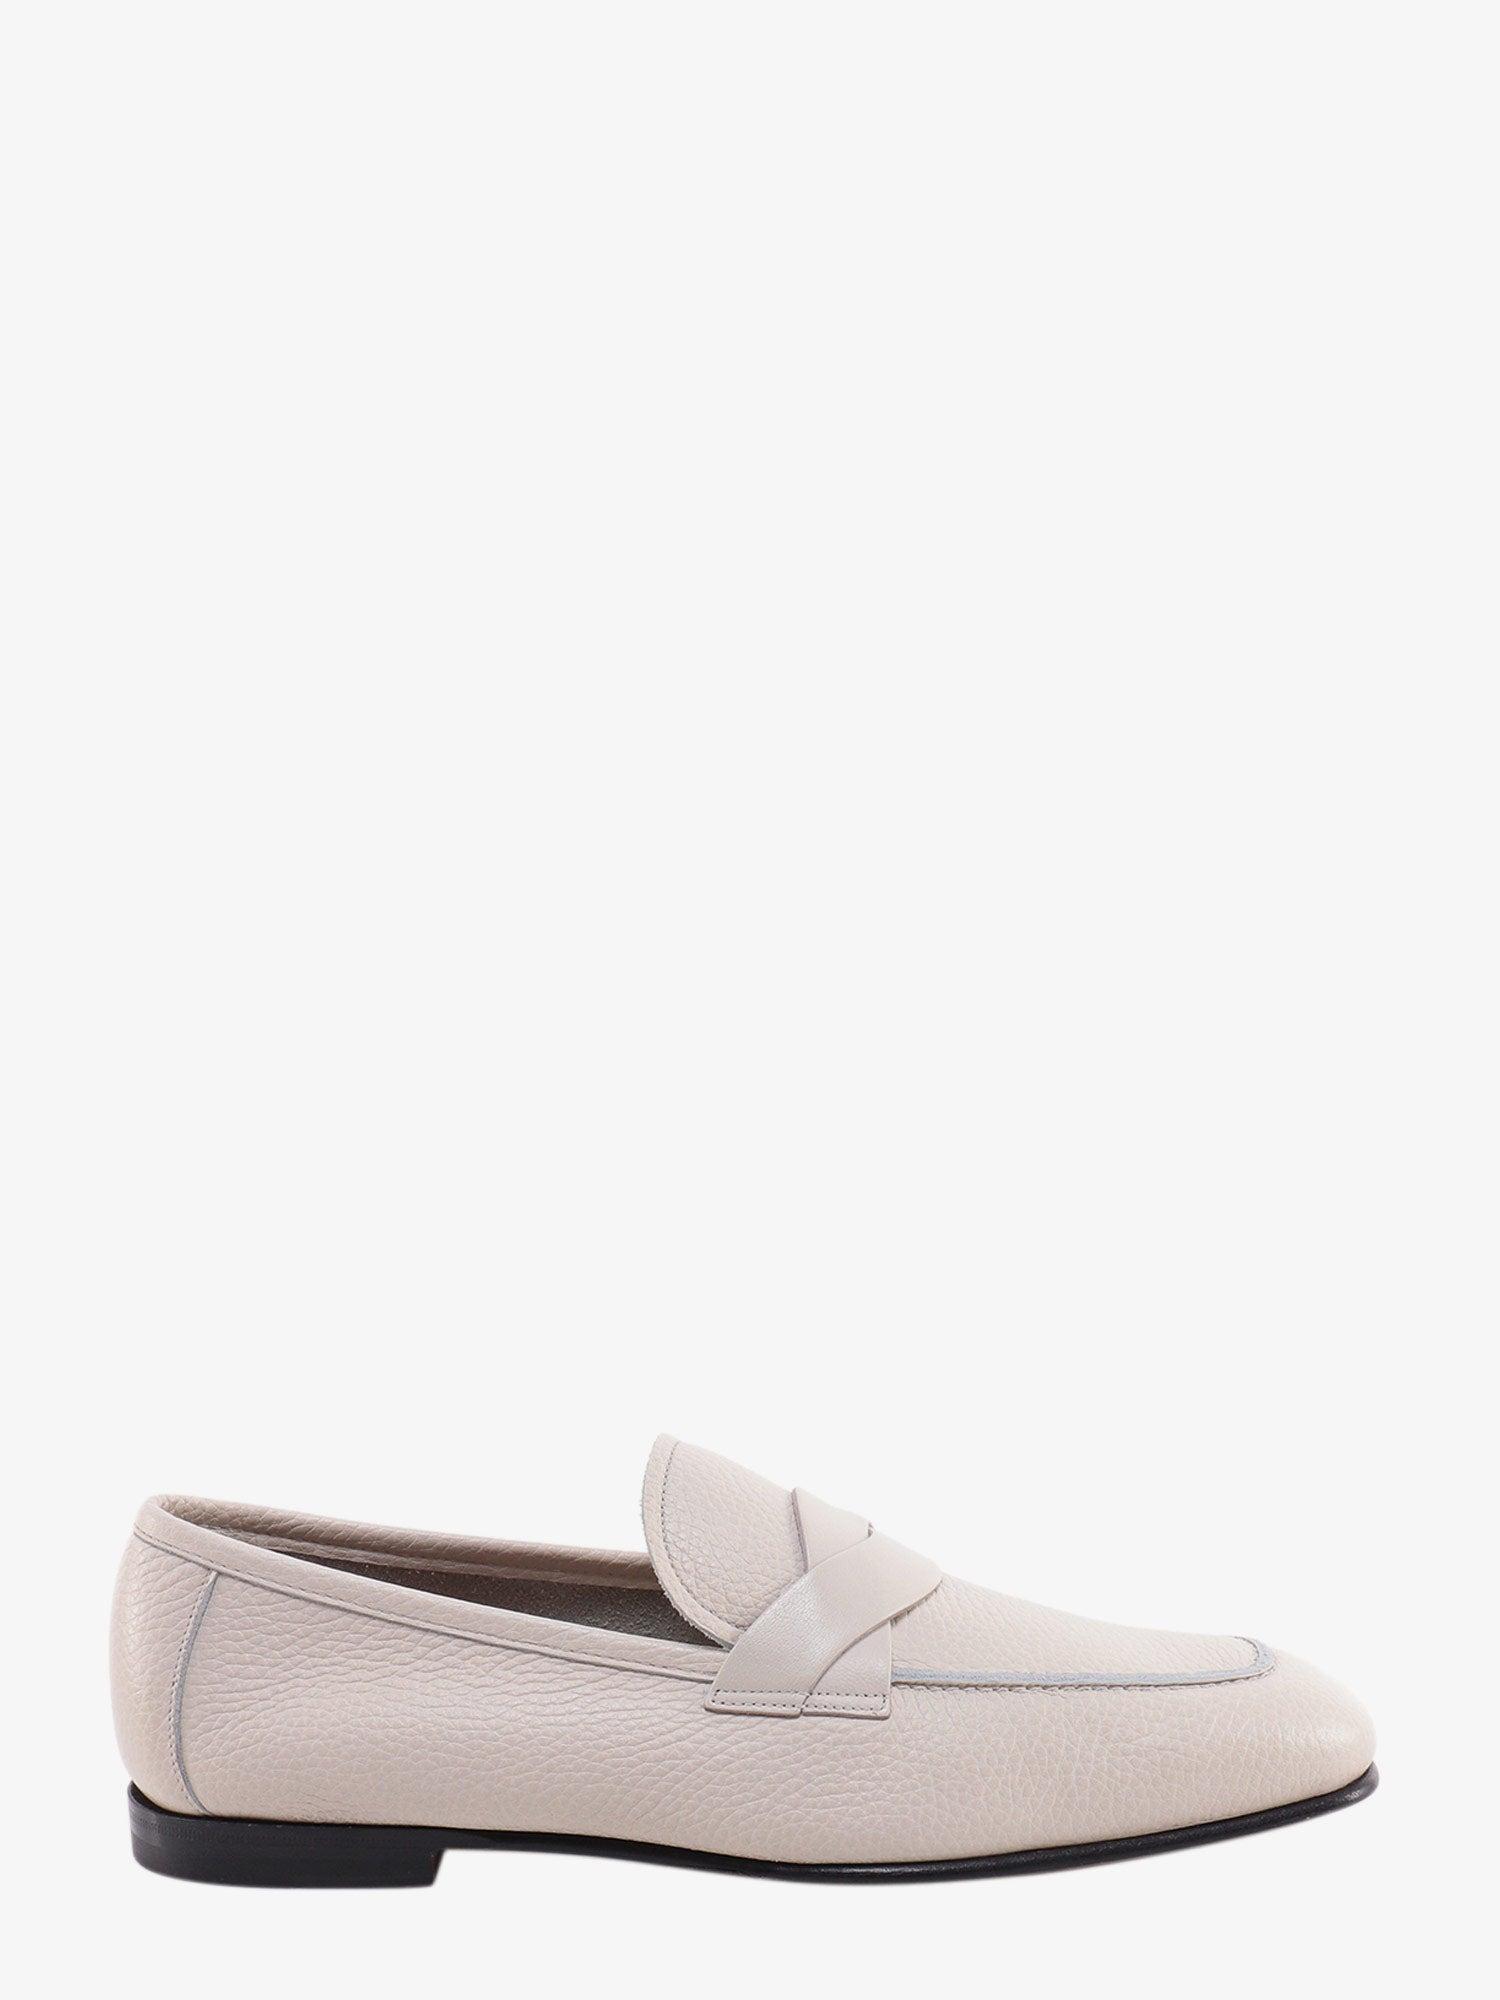 Tom Ford Loafer in White for Men | Lyst